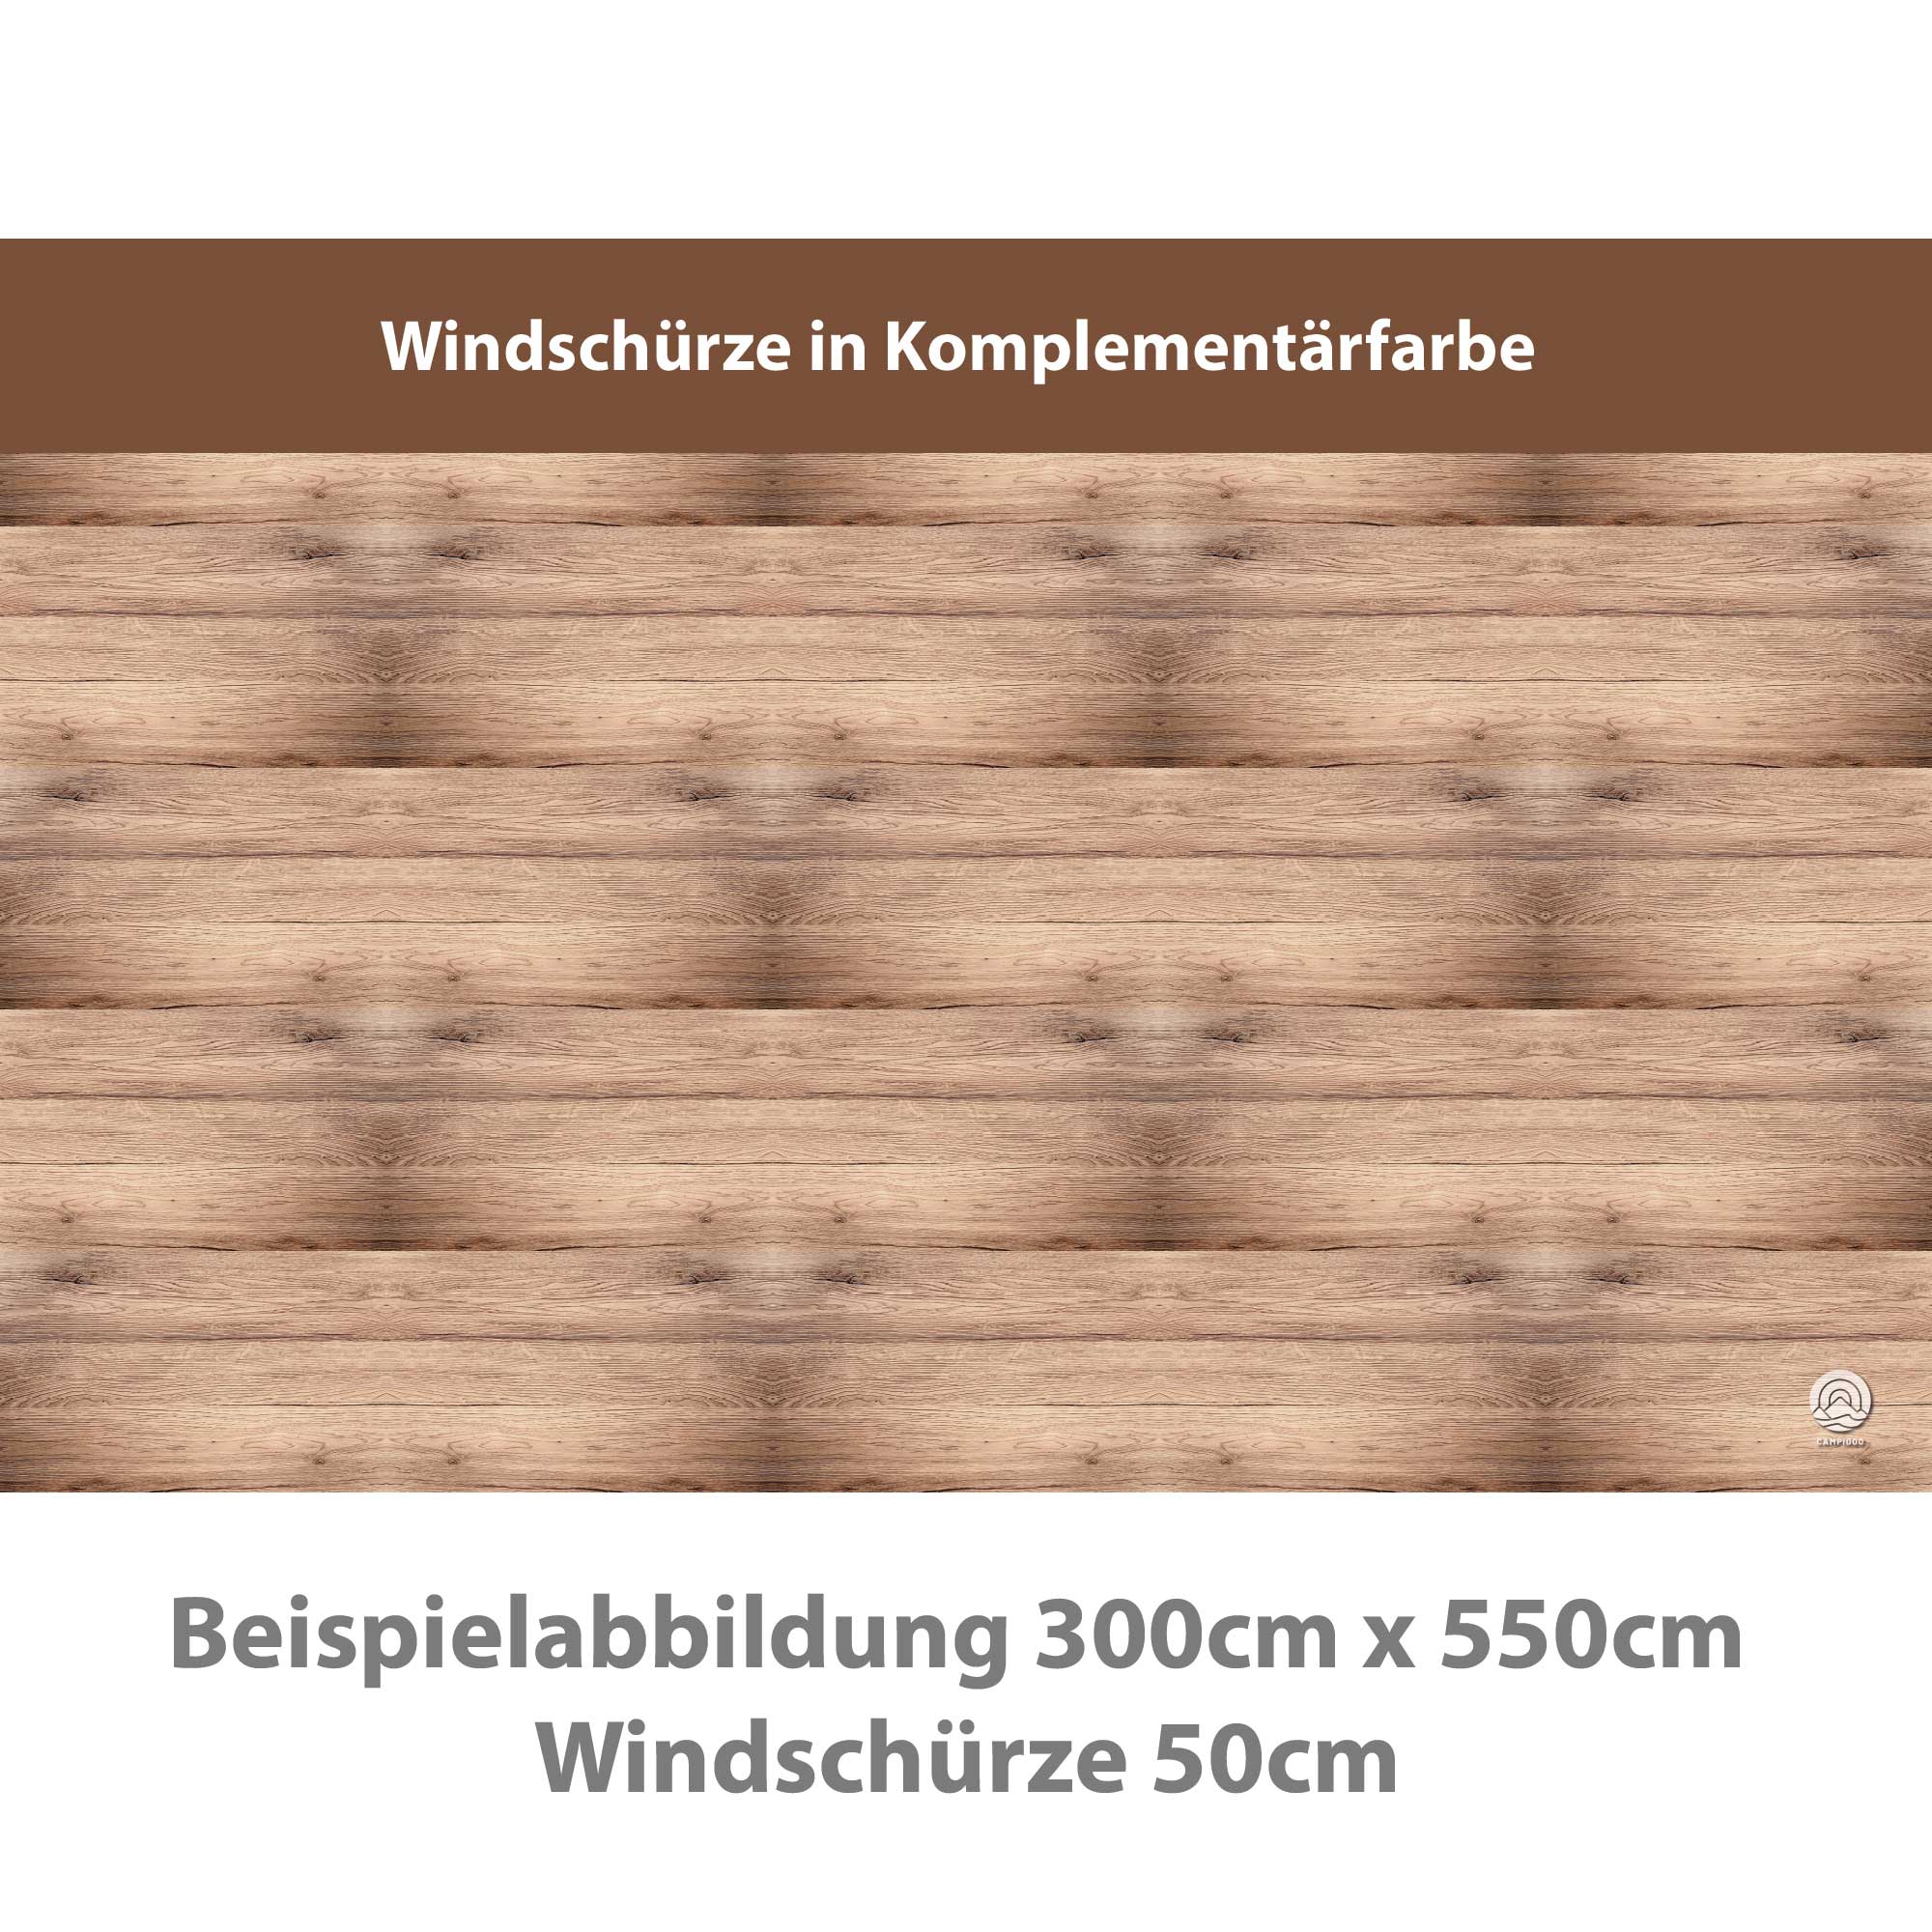 Premium Vorzeltteppich mit abnehmbarer Windschürze - HOLZDECK - 2,5m x 4,5m - Abverkauf